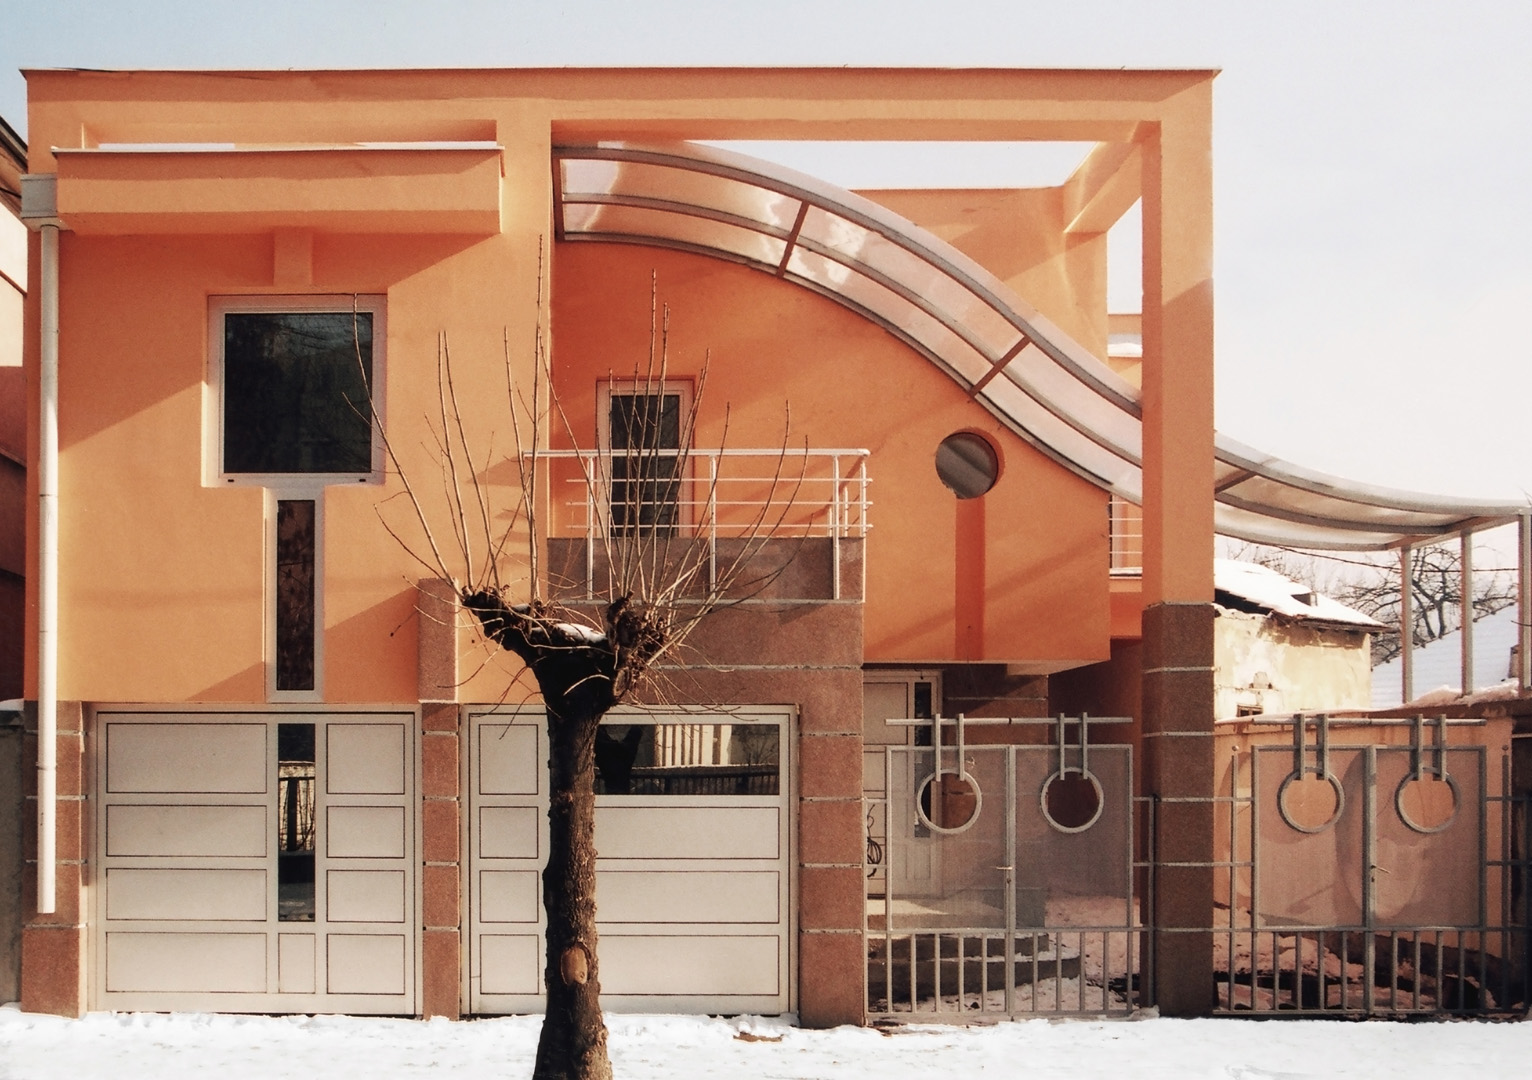 Arhitektura Budjevac – 1 Cube house